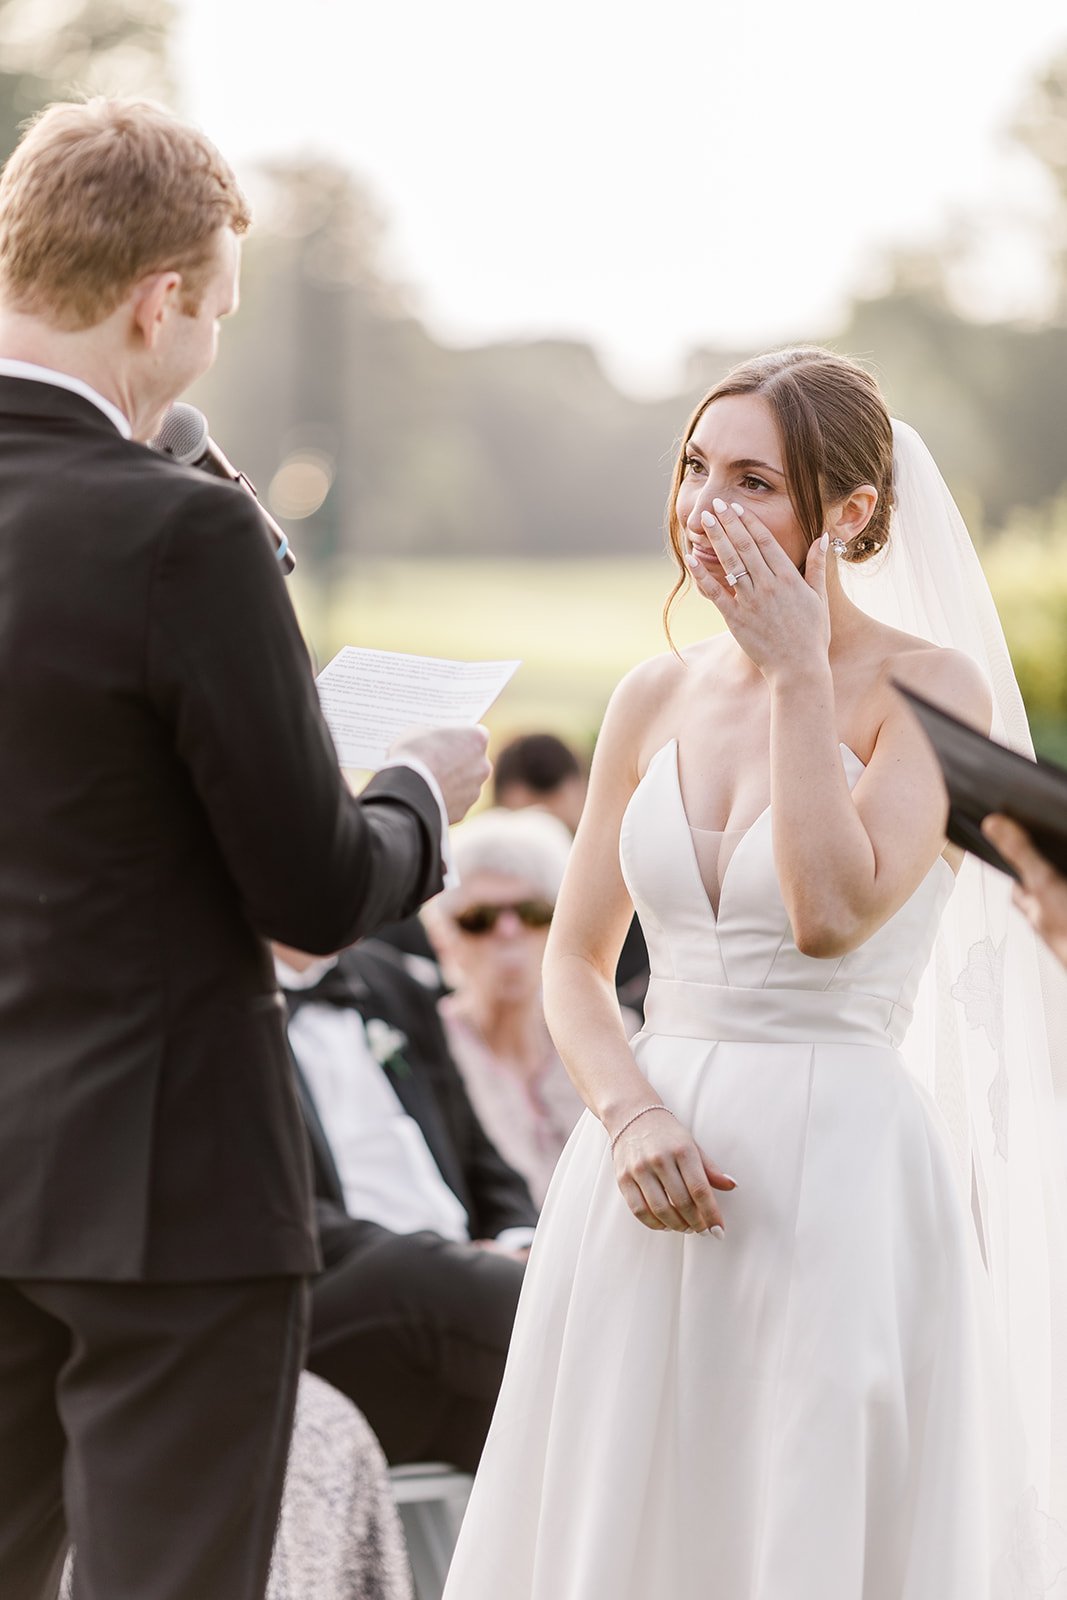 Allie-Nate-Wedding-Ceremony-By-Lizzie-Burger-Photo-121.jpg